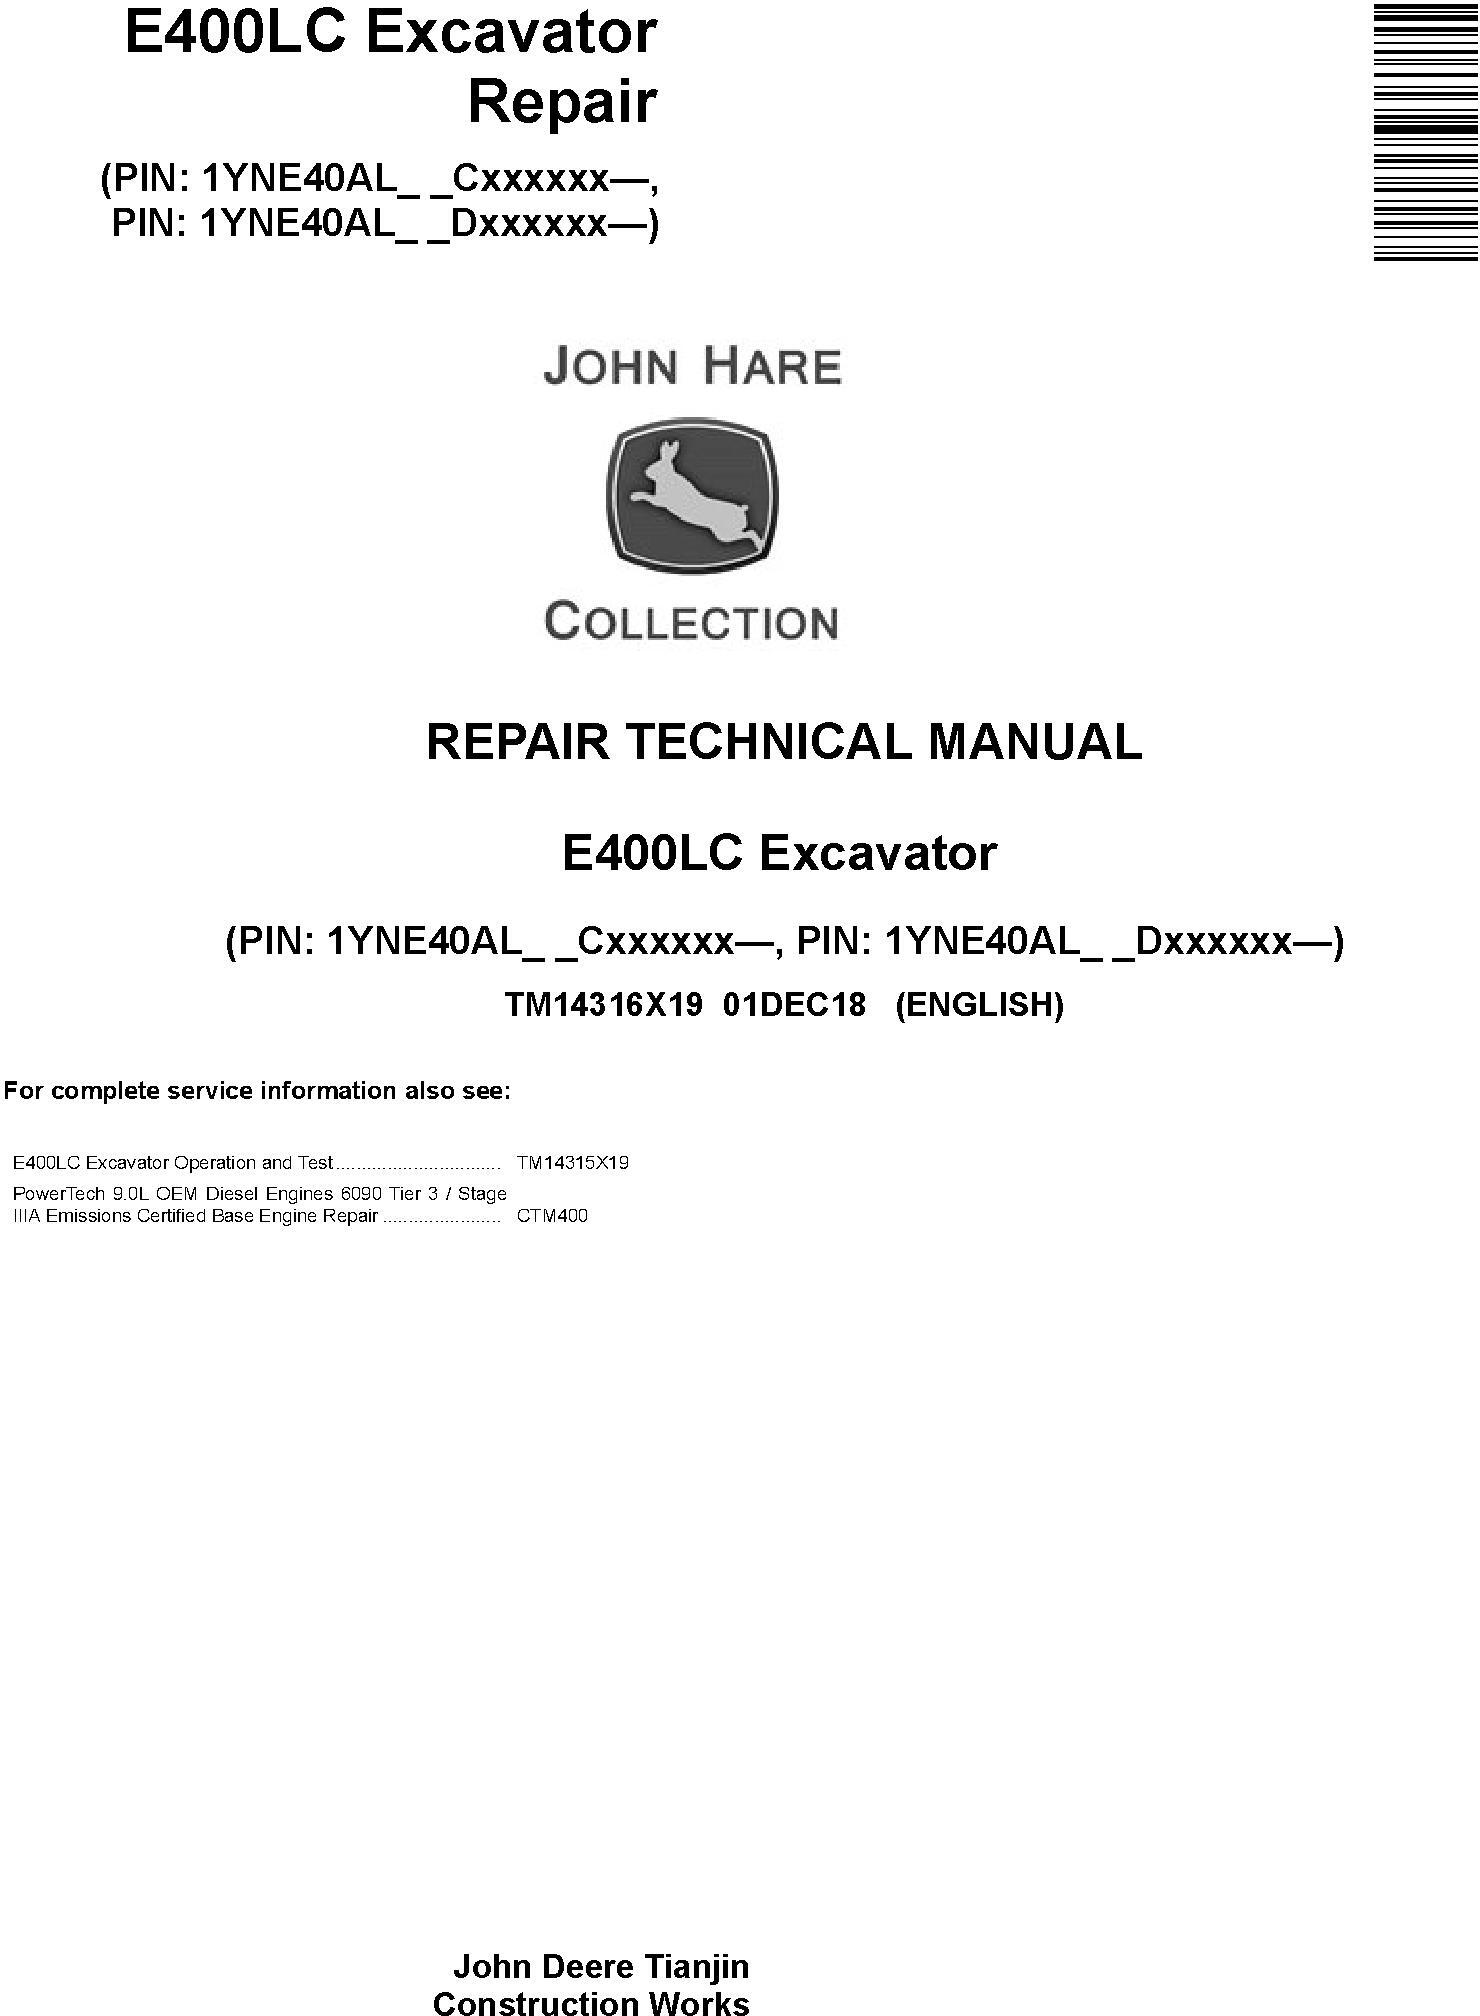 John Deere E400LC Excavator Repair Technical Manual TM14316X19